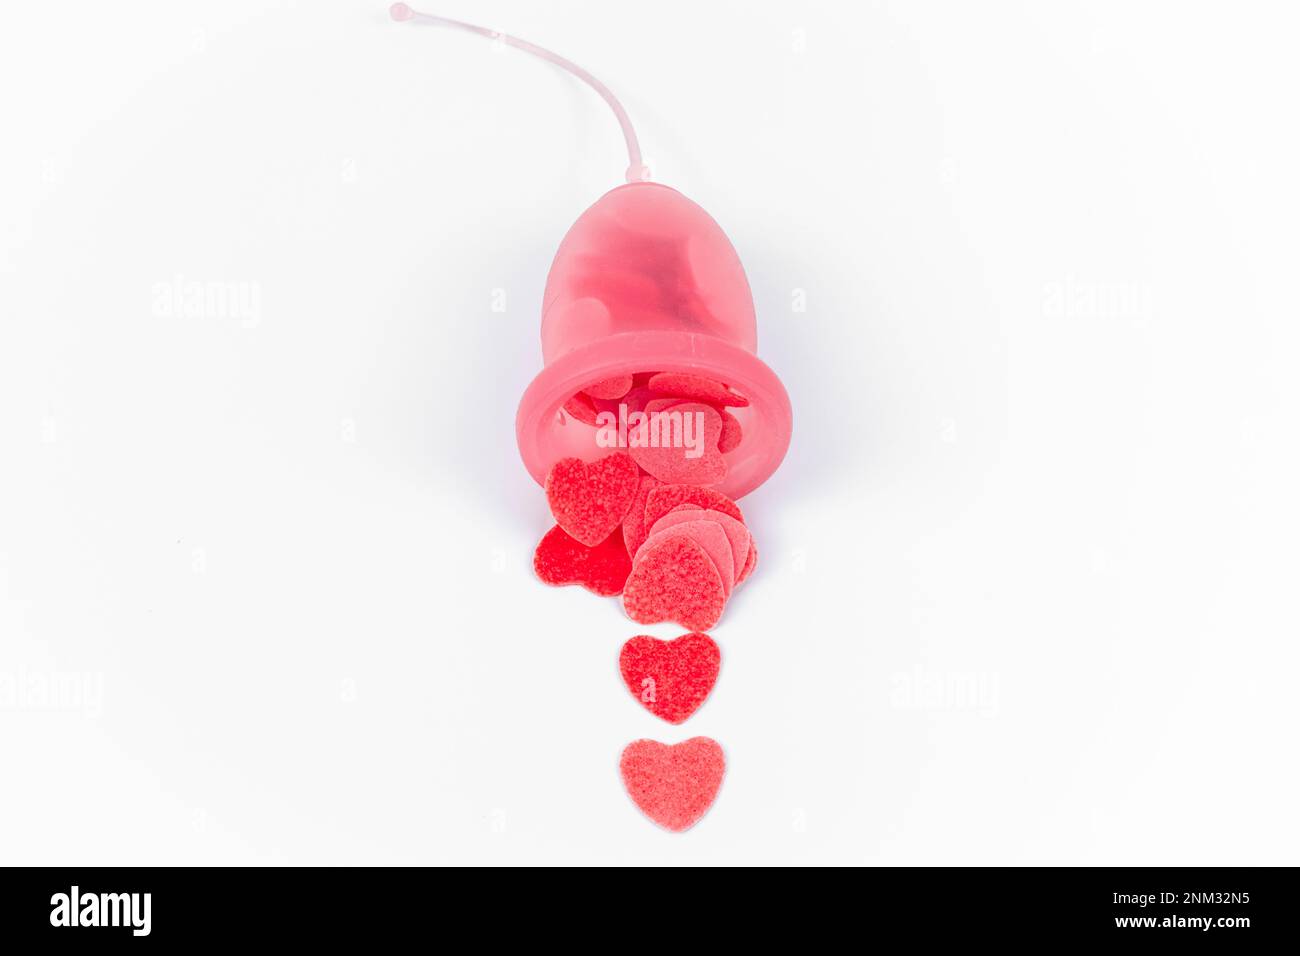 Tasse menstruelle rose pleine de petits coeurs rouges simulant le saignement. Produit d'hygiène intime féminin alternatif. La santé, la période et les saignements des femmes. Banque D'Images